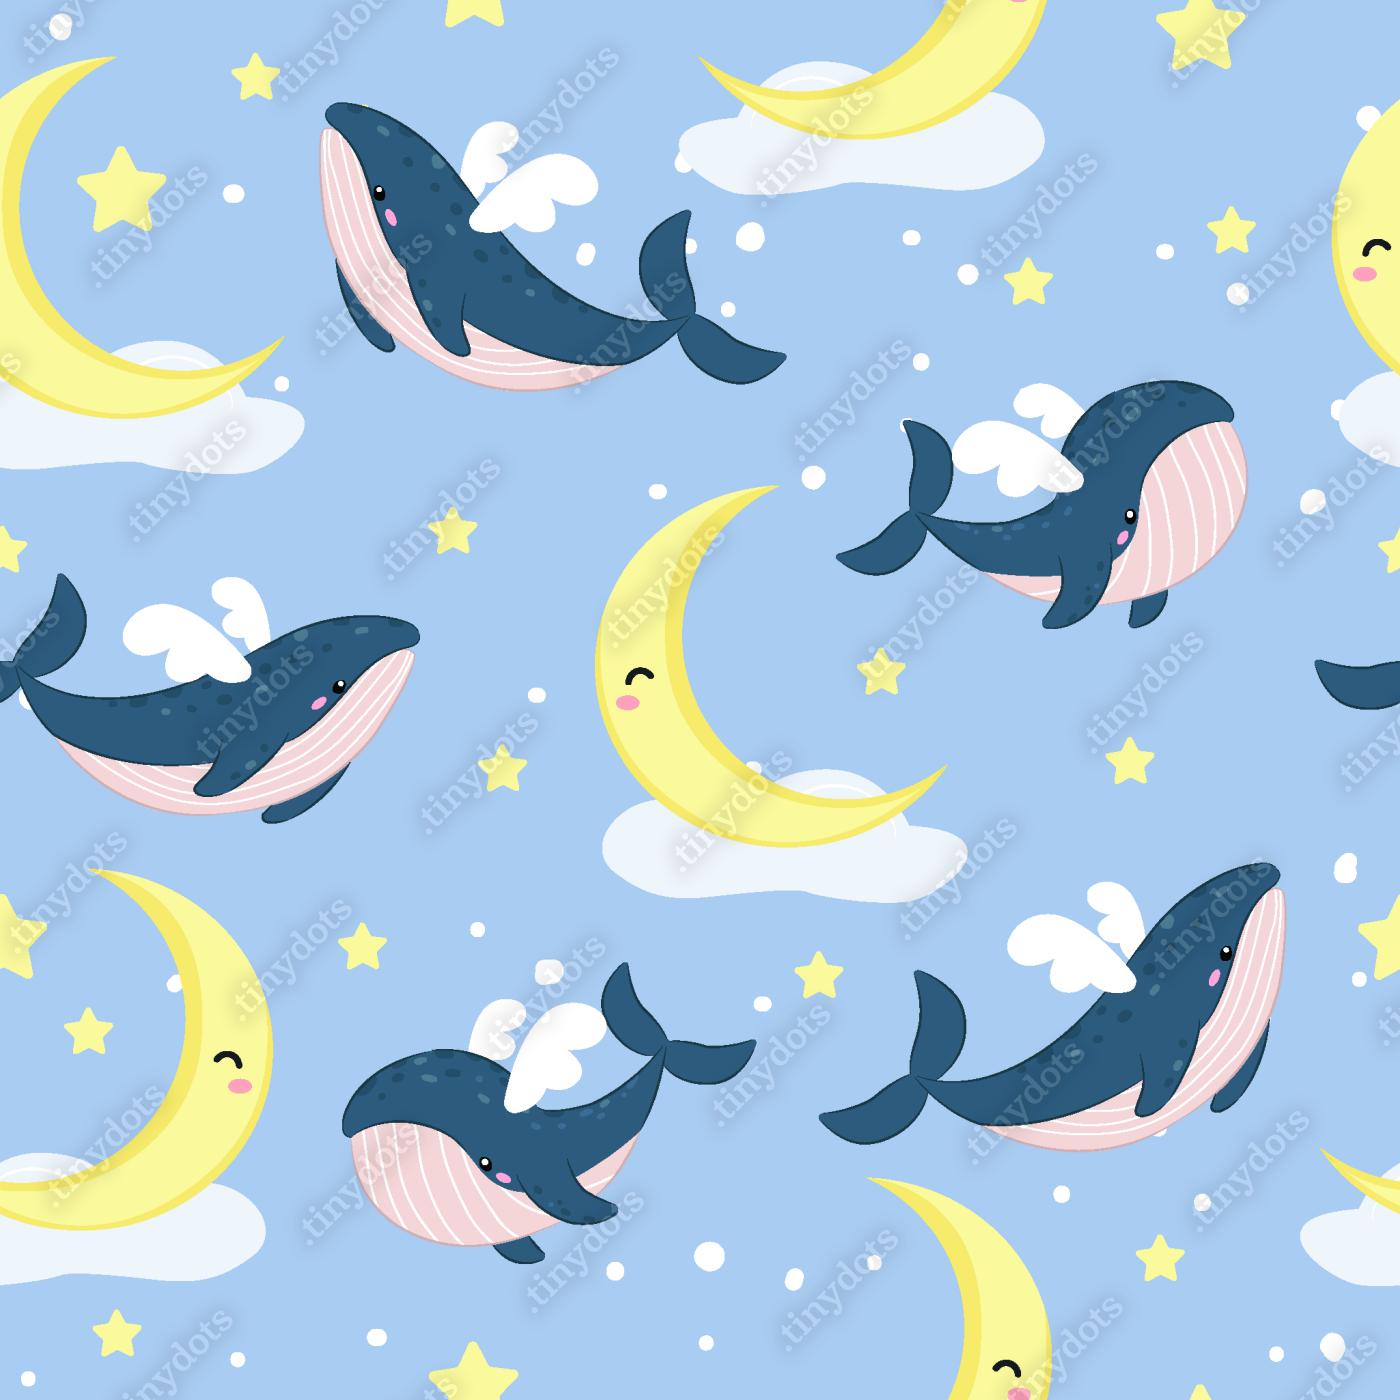 Fotobehang schattige walvis illustratie naadloos patroon voor kinderen projecten, stof, scrapbooking, knutselen, uitnodiging en nog veel meer